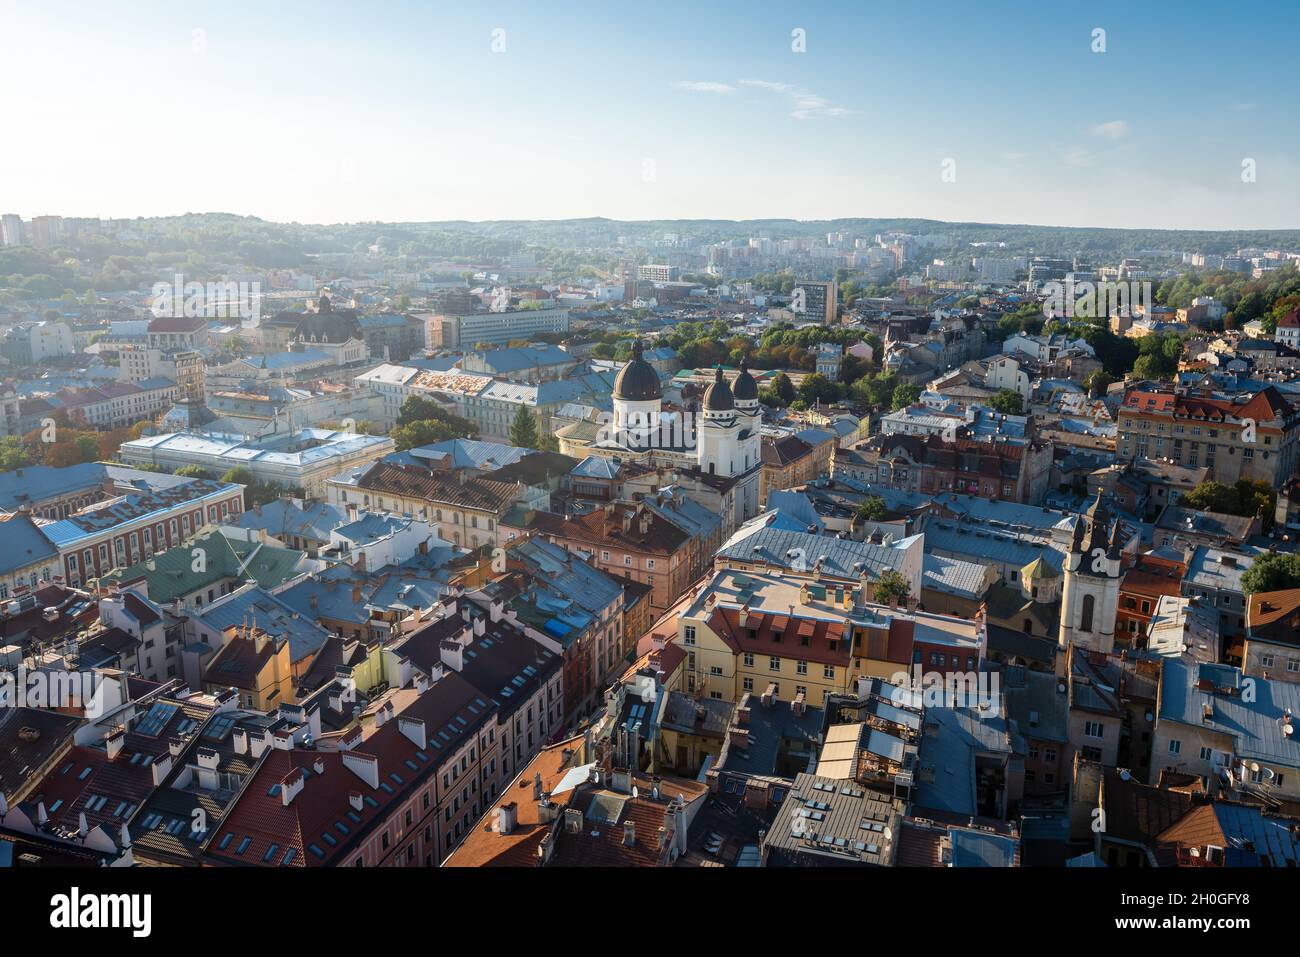 Luftaufnahme von Lviv mit der Kirche der Verklärung (griechisch-katholische Kirche) - Lviv, Ukraine Stockfoto